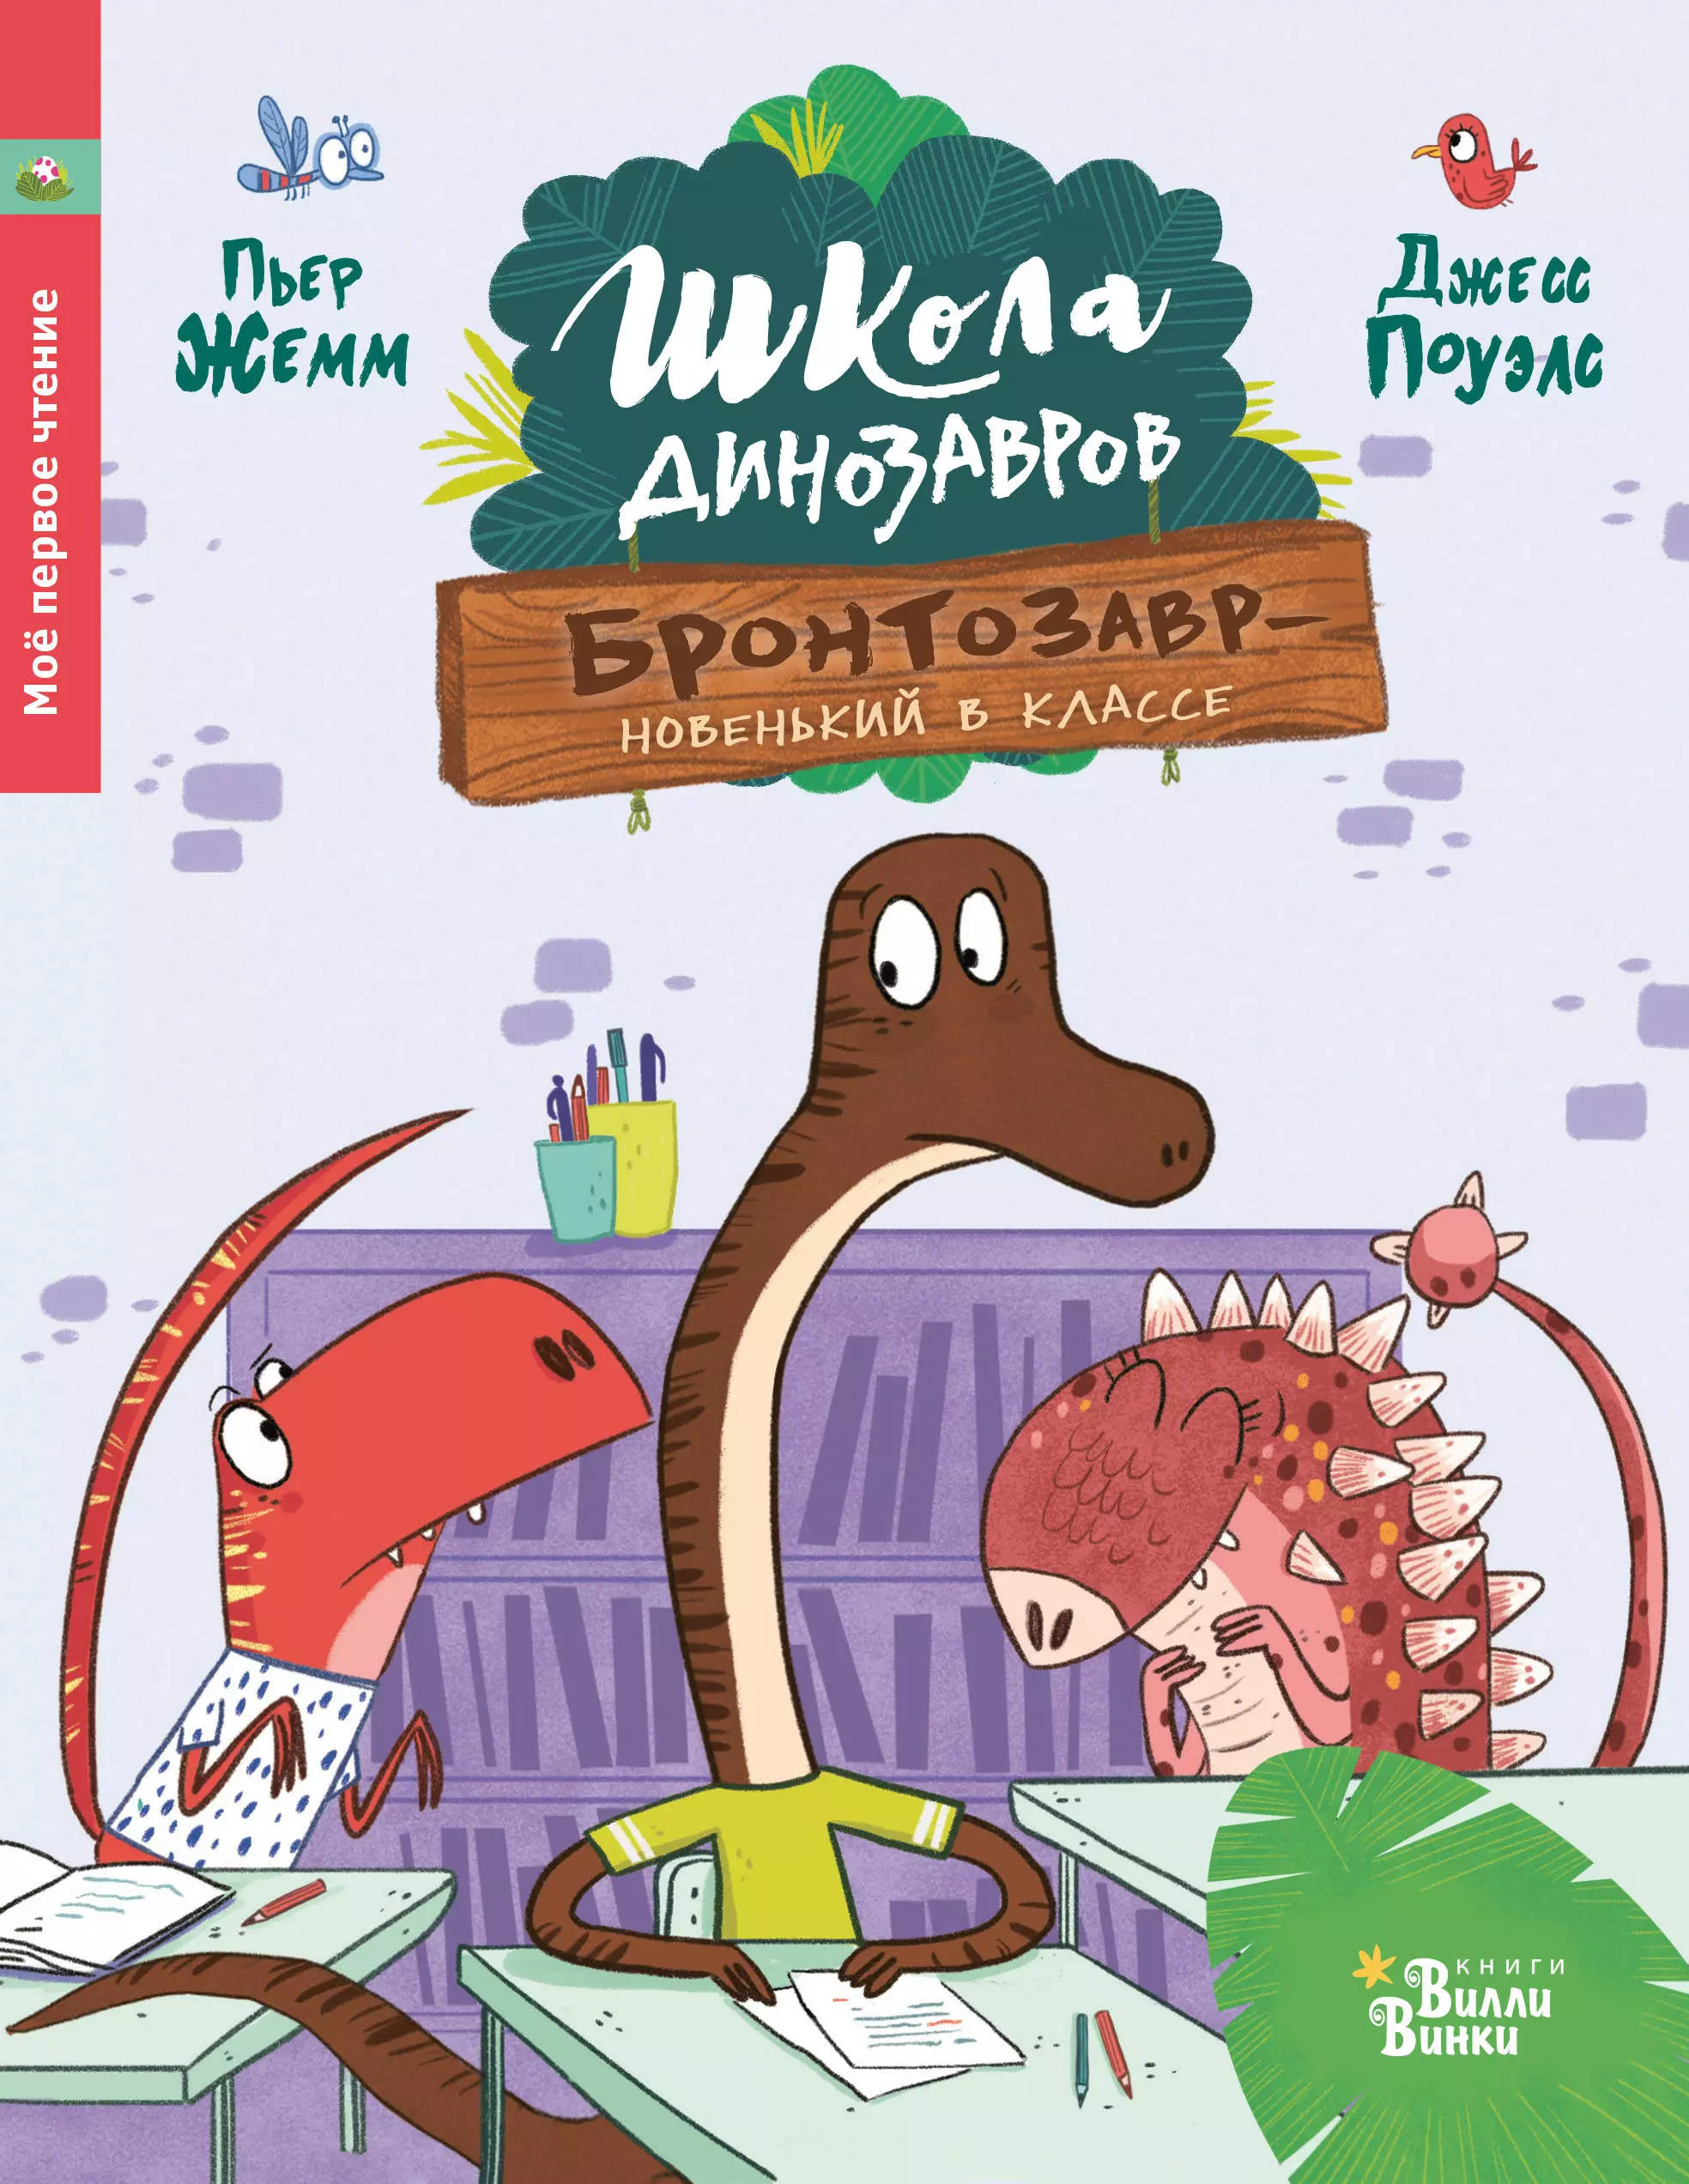 жемм пьер школа динозавров большая книга историй Жемм Пьер Бронтозавр - новенький в классе